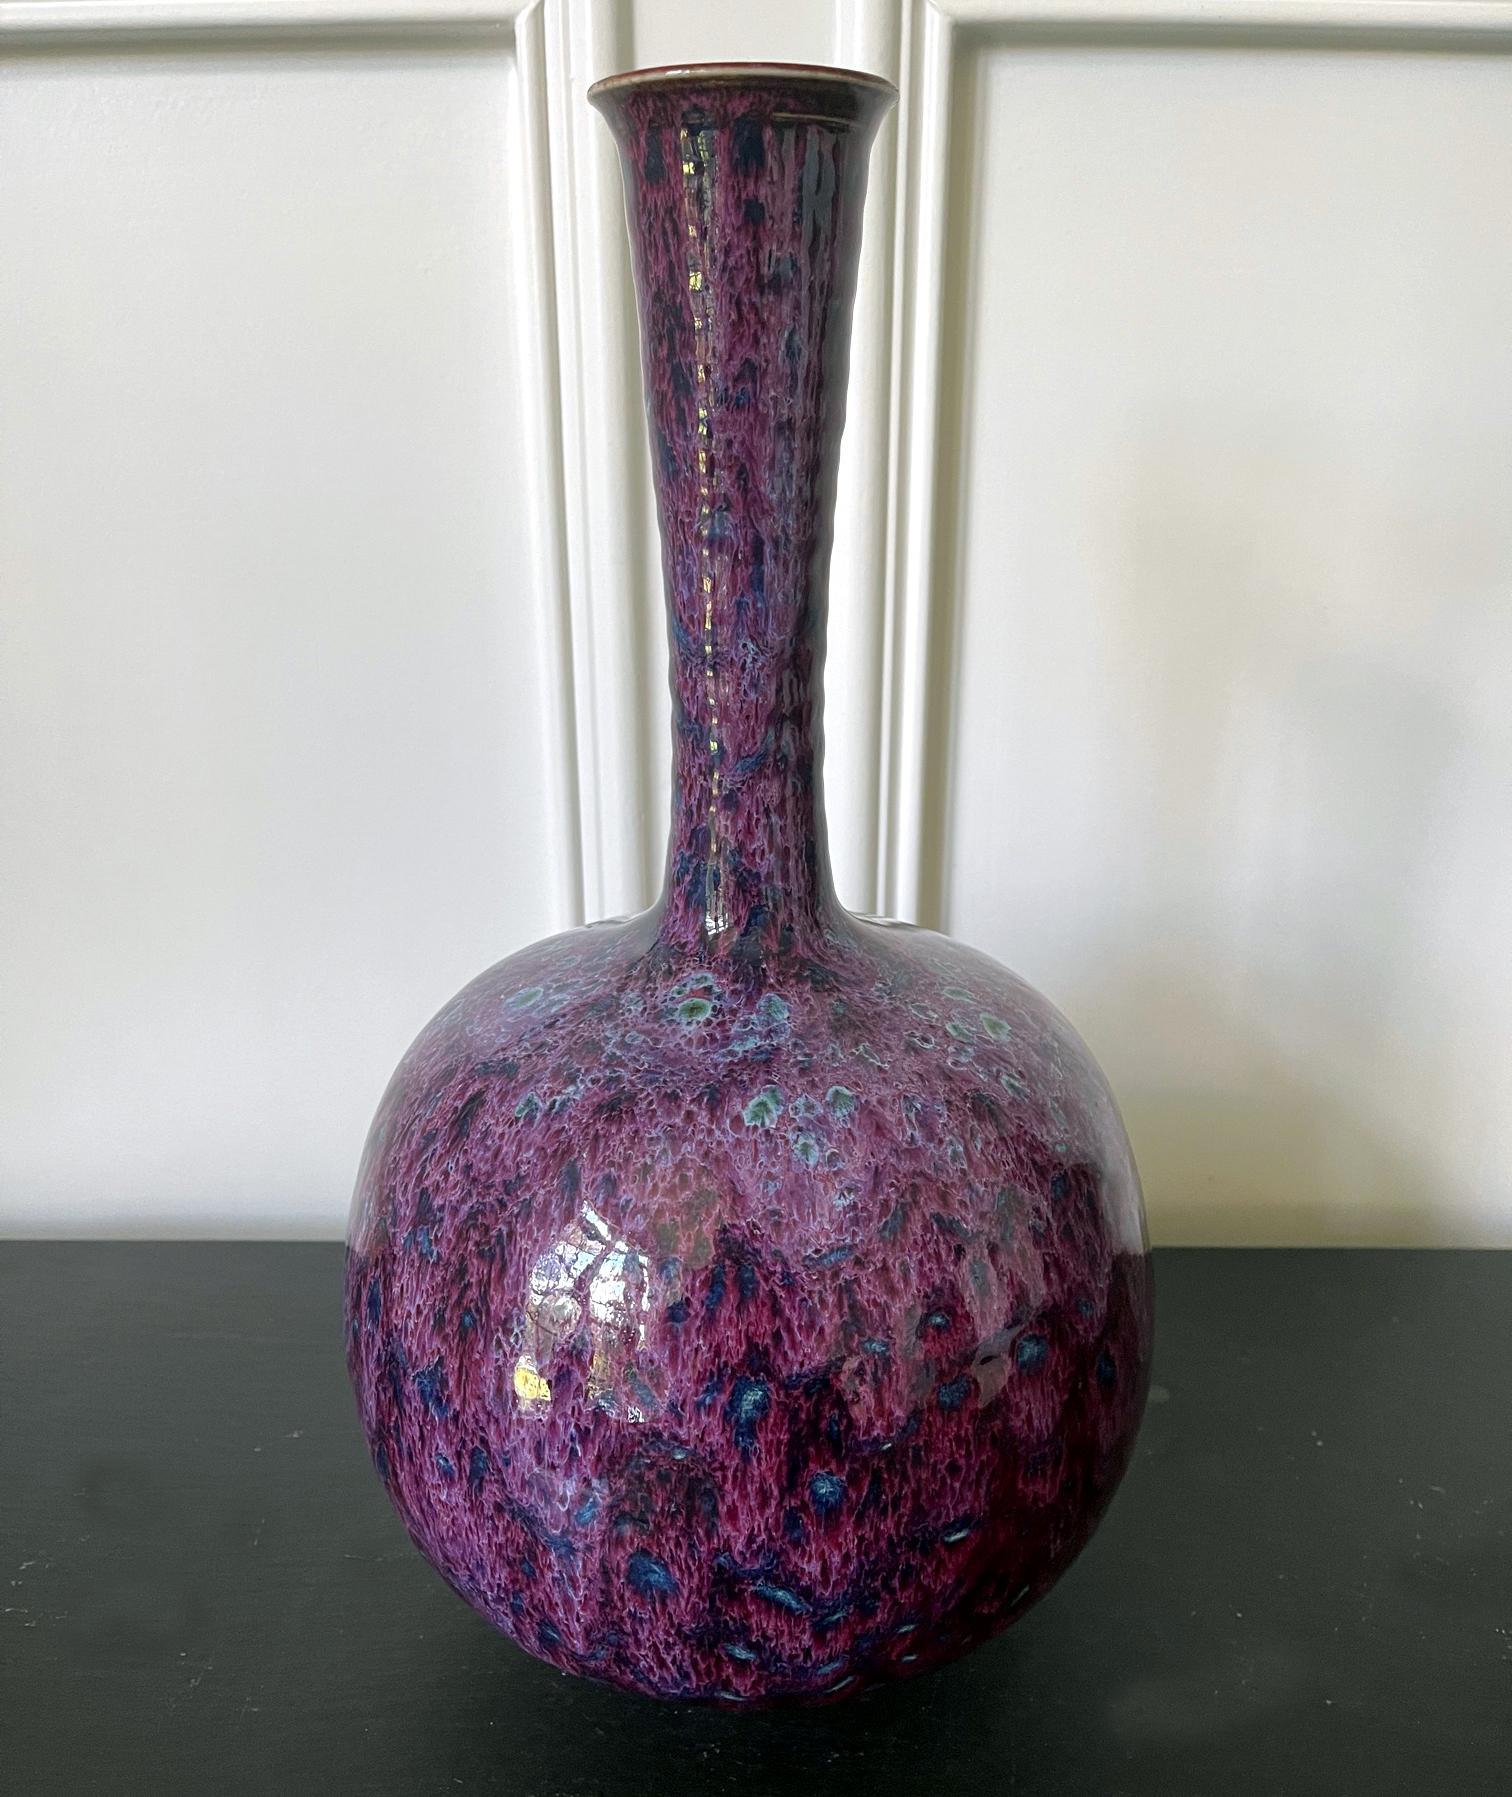 Un vase en céramique d'une taille impressionnante, avec un corps bulbeux et un long col enroulé, réalisé par le potier Frère Thomas Bezanson (1929-2007). La forme moderne minimaliste pourrait être distillée à partir de la classique bouteille d'ail